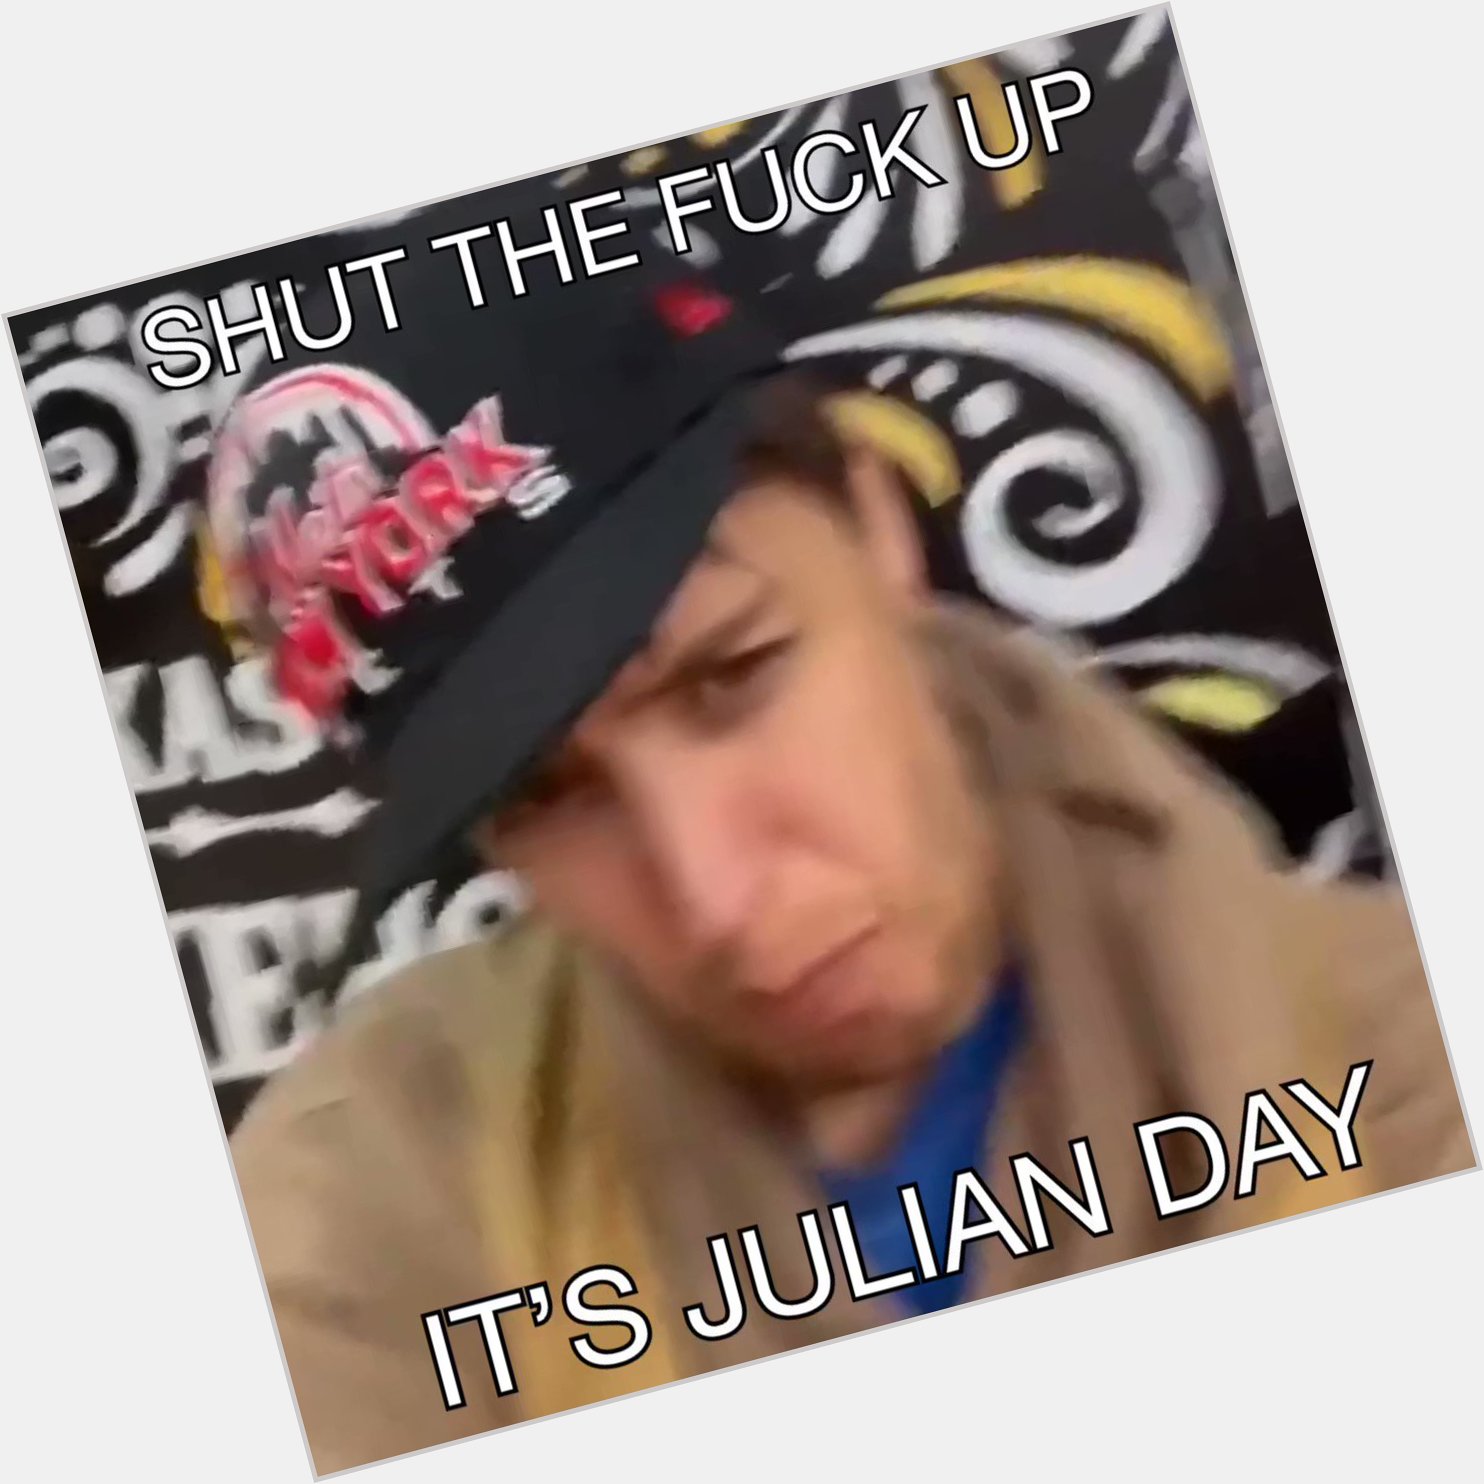  can you wish julian casablancas a happy birthday please 